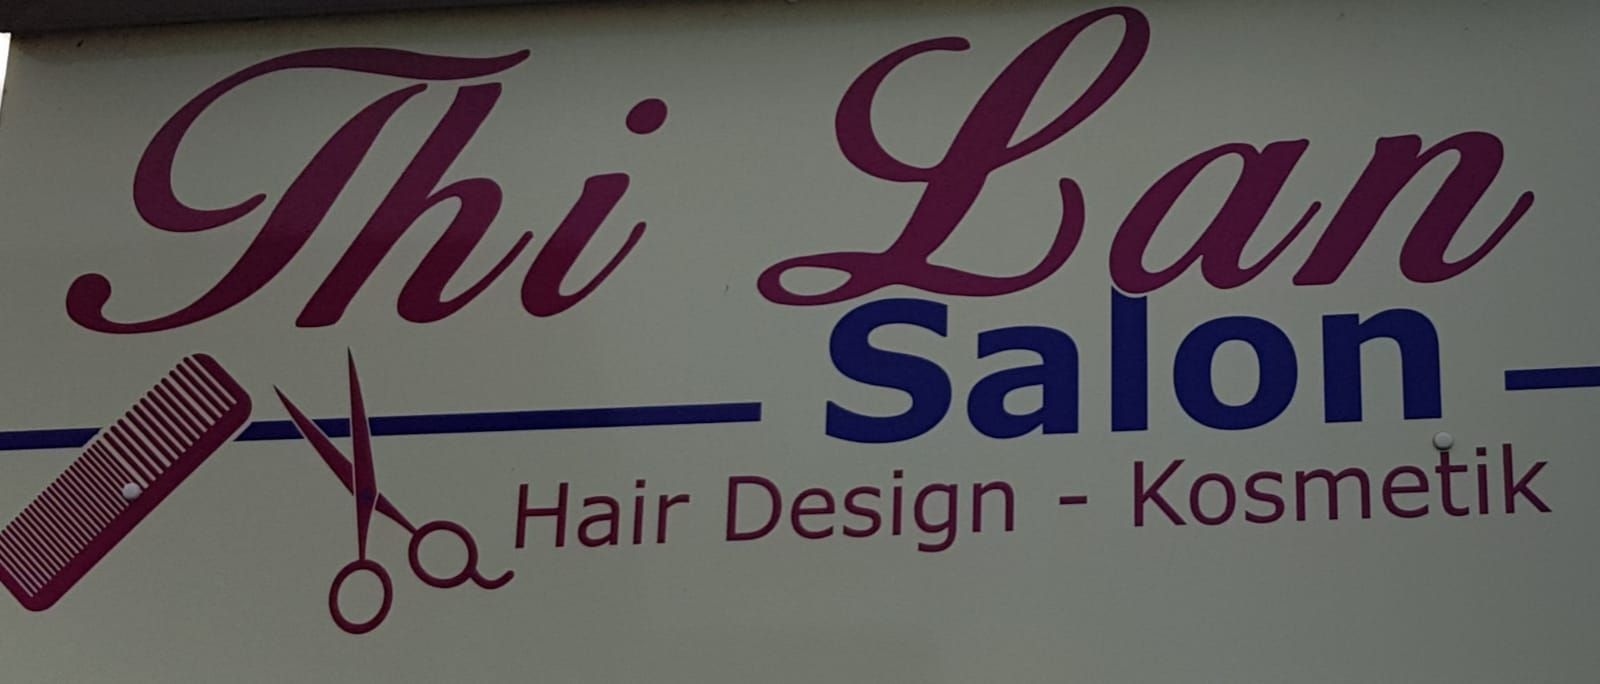 Thi Lan Salon Hair-Design - Kosmetik - Friseur